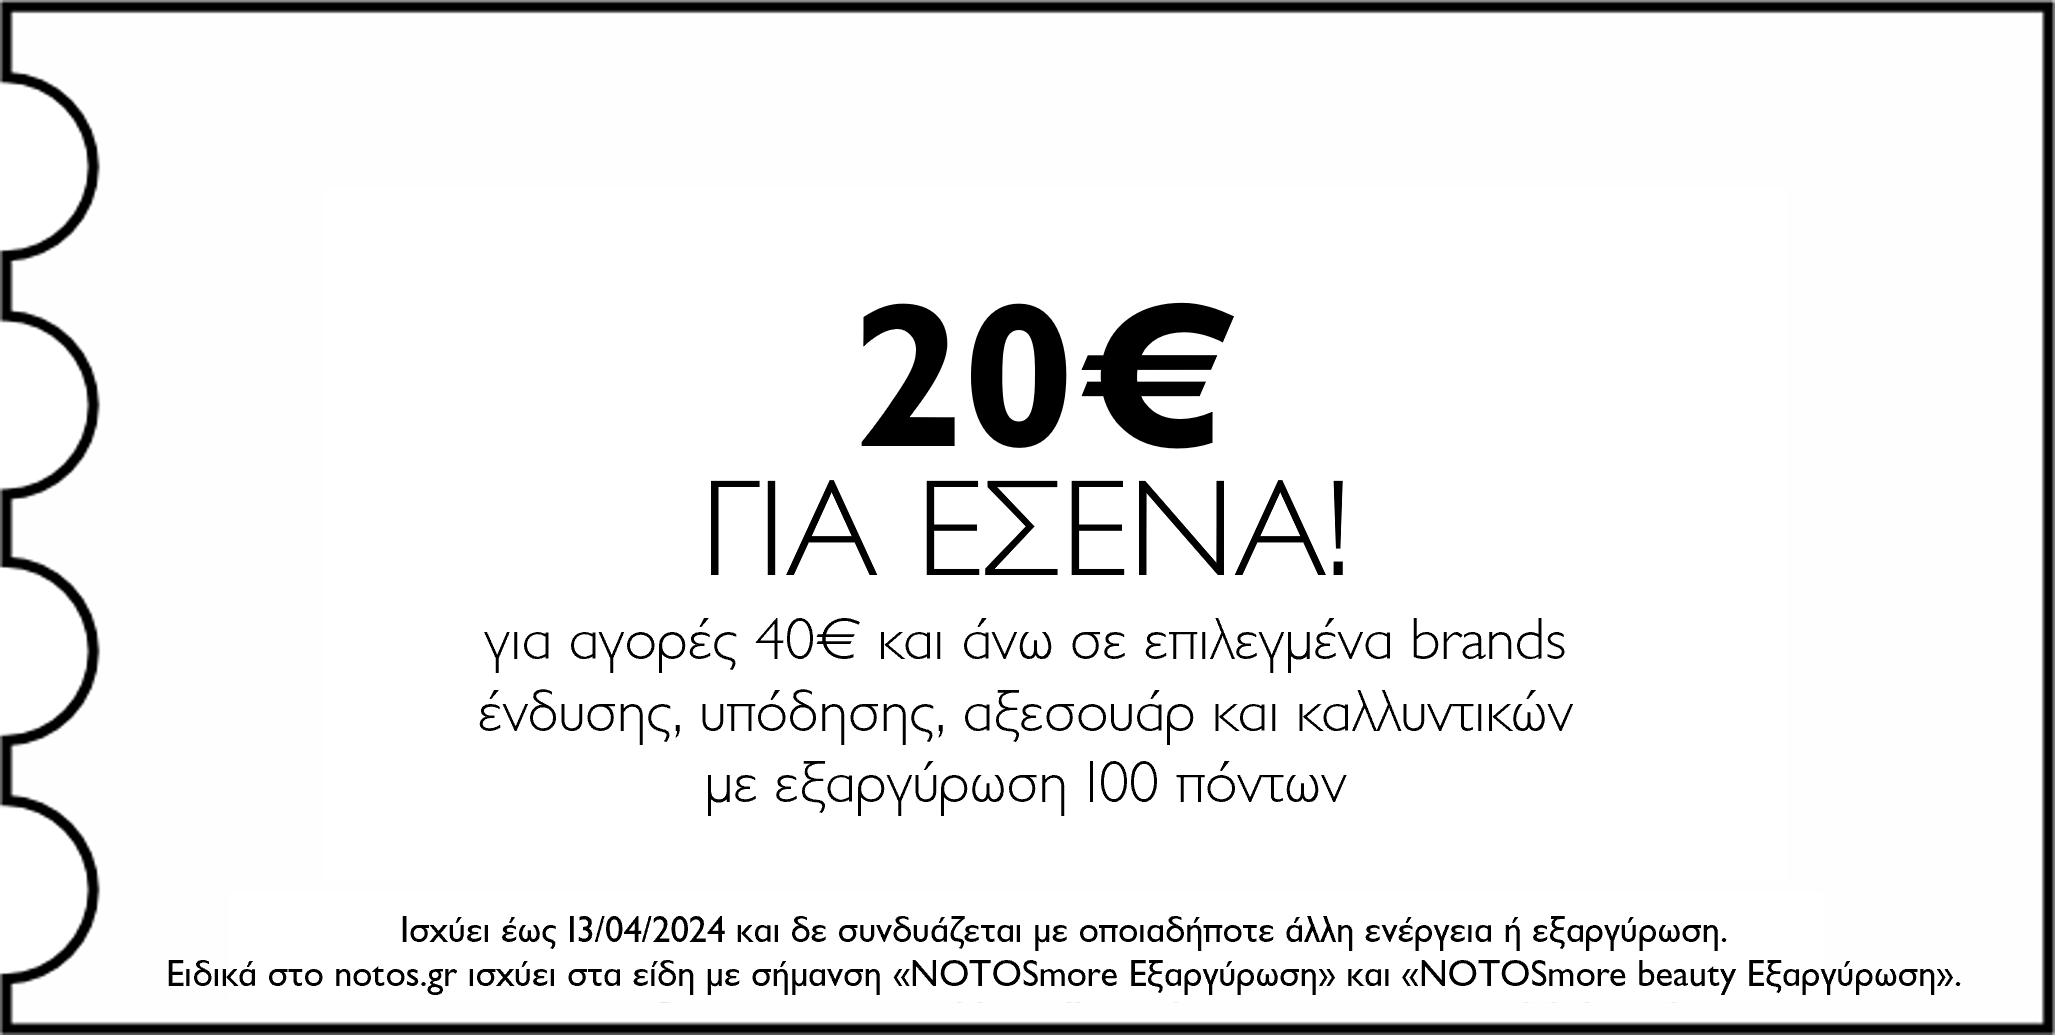 GENERAL - 20€ για αγορές 40€ και άνω σε επιλεγμένα brands ένδυσης, υπόδησης, αξεσουάρ & καλλυντικών με εξαργύρωση 100 πόντων για εσένα